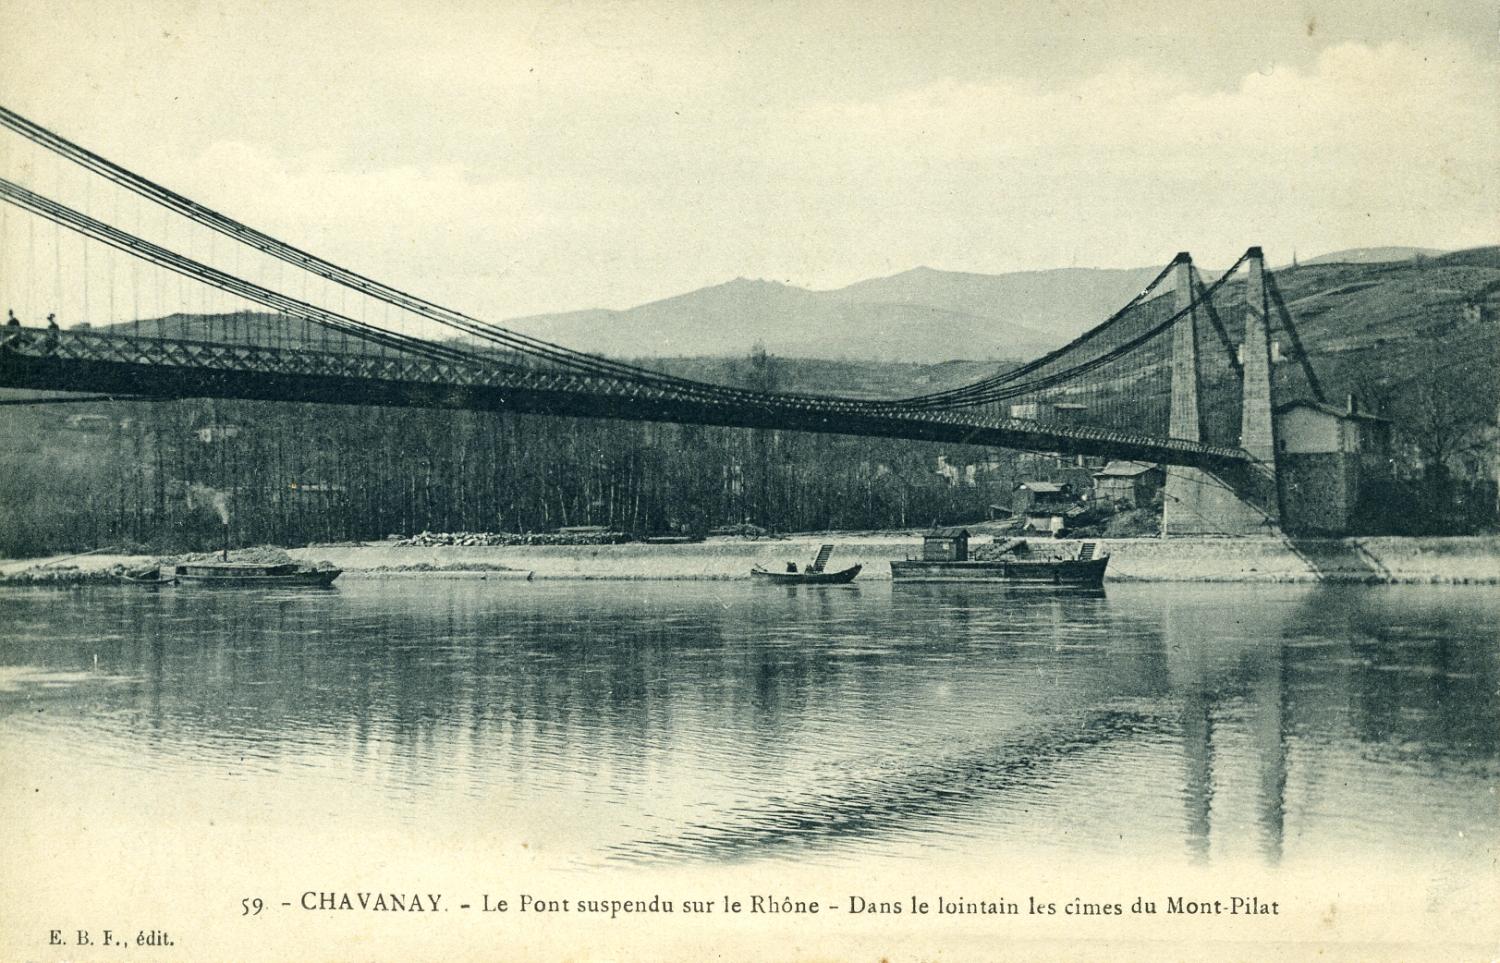 Chavanay - Le pont suspendu sur le Rhône